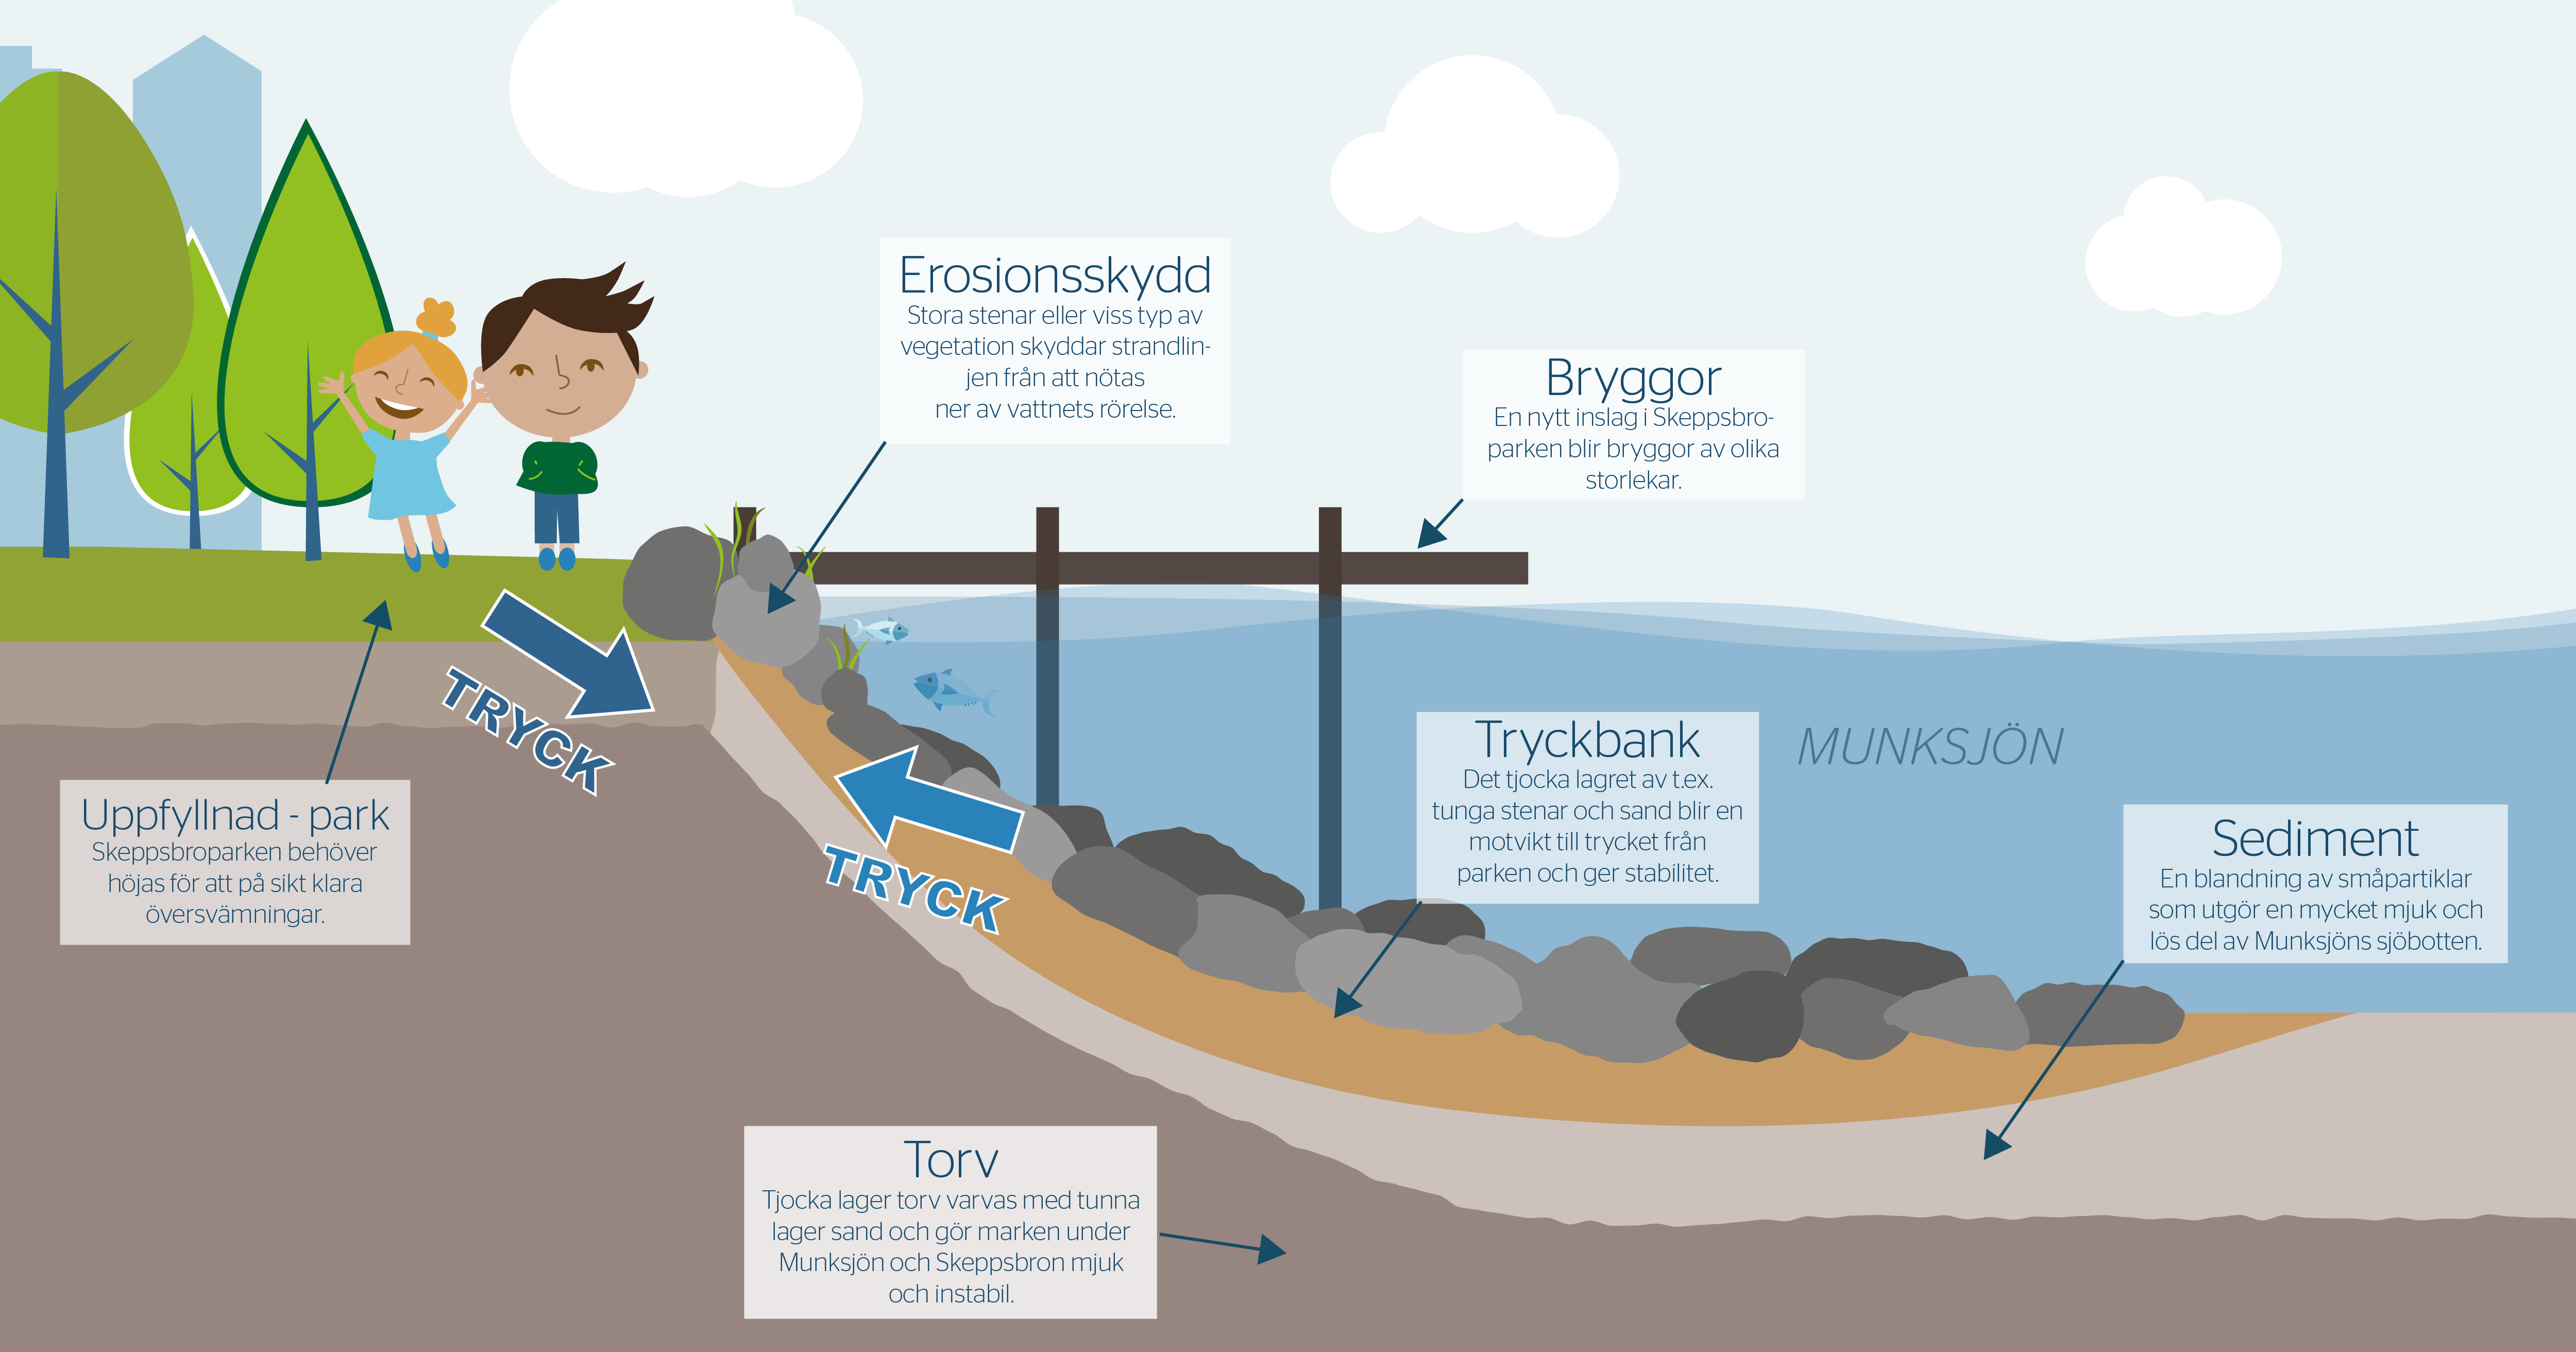 Illustration som förenklat förklarar de olika vattenverksamheterna. Klicka på bilden för att ladda ner en tillgänglighetsanpassad PDF.